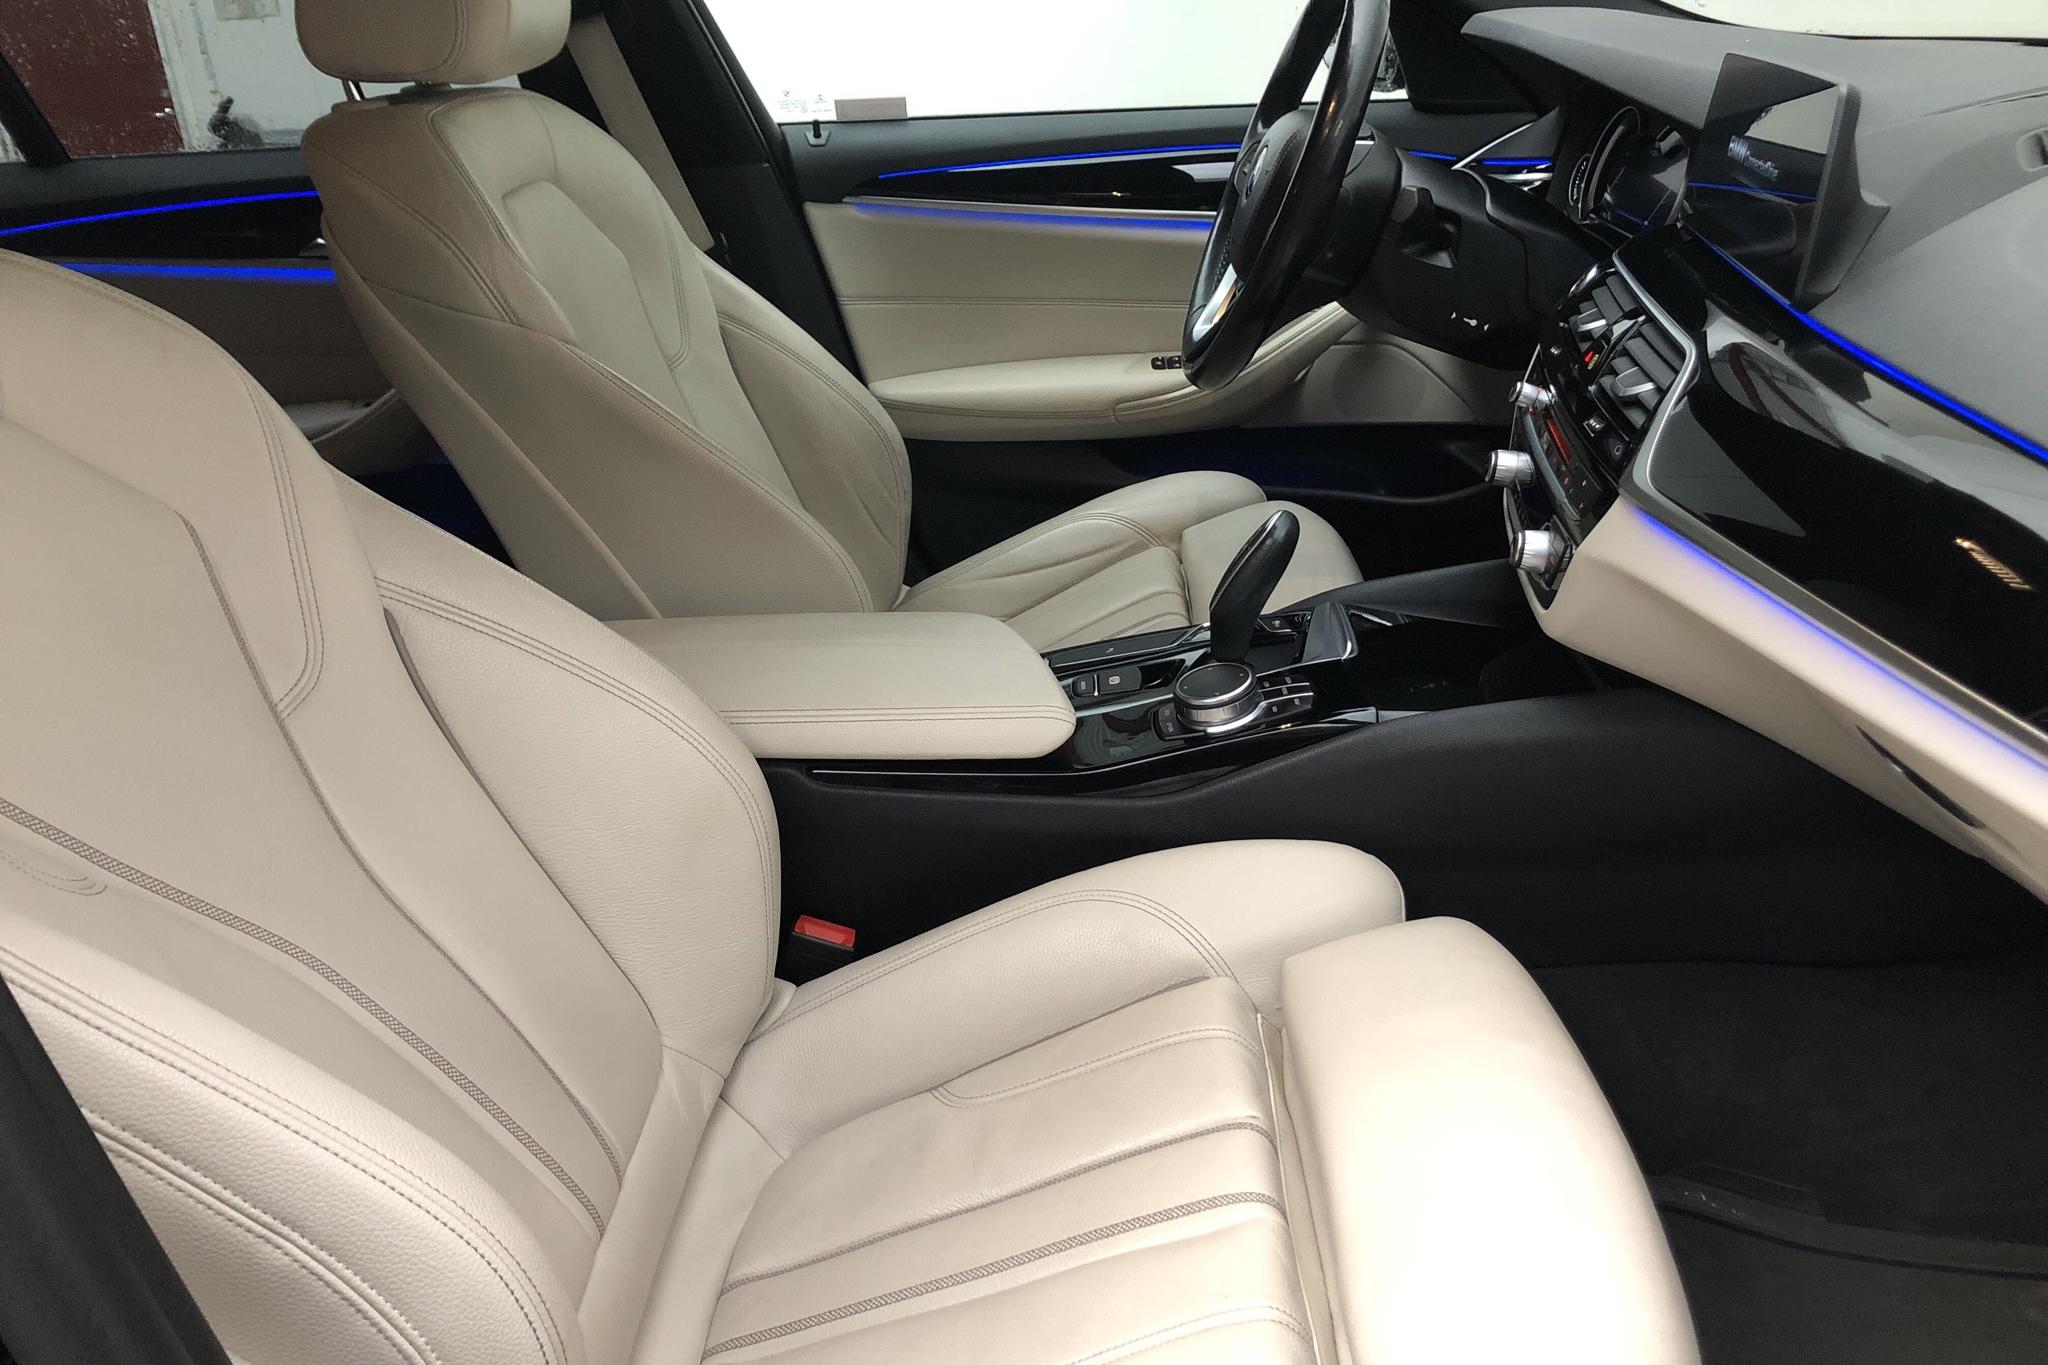 BMW 520d xDrive Touring, G31 (190hk) - 137 480 km - Automatic - black - 2018